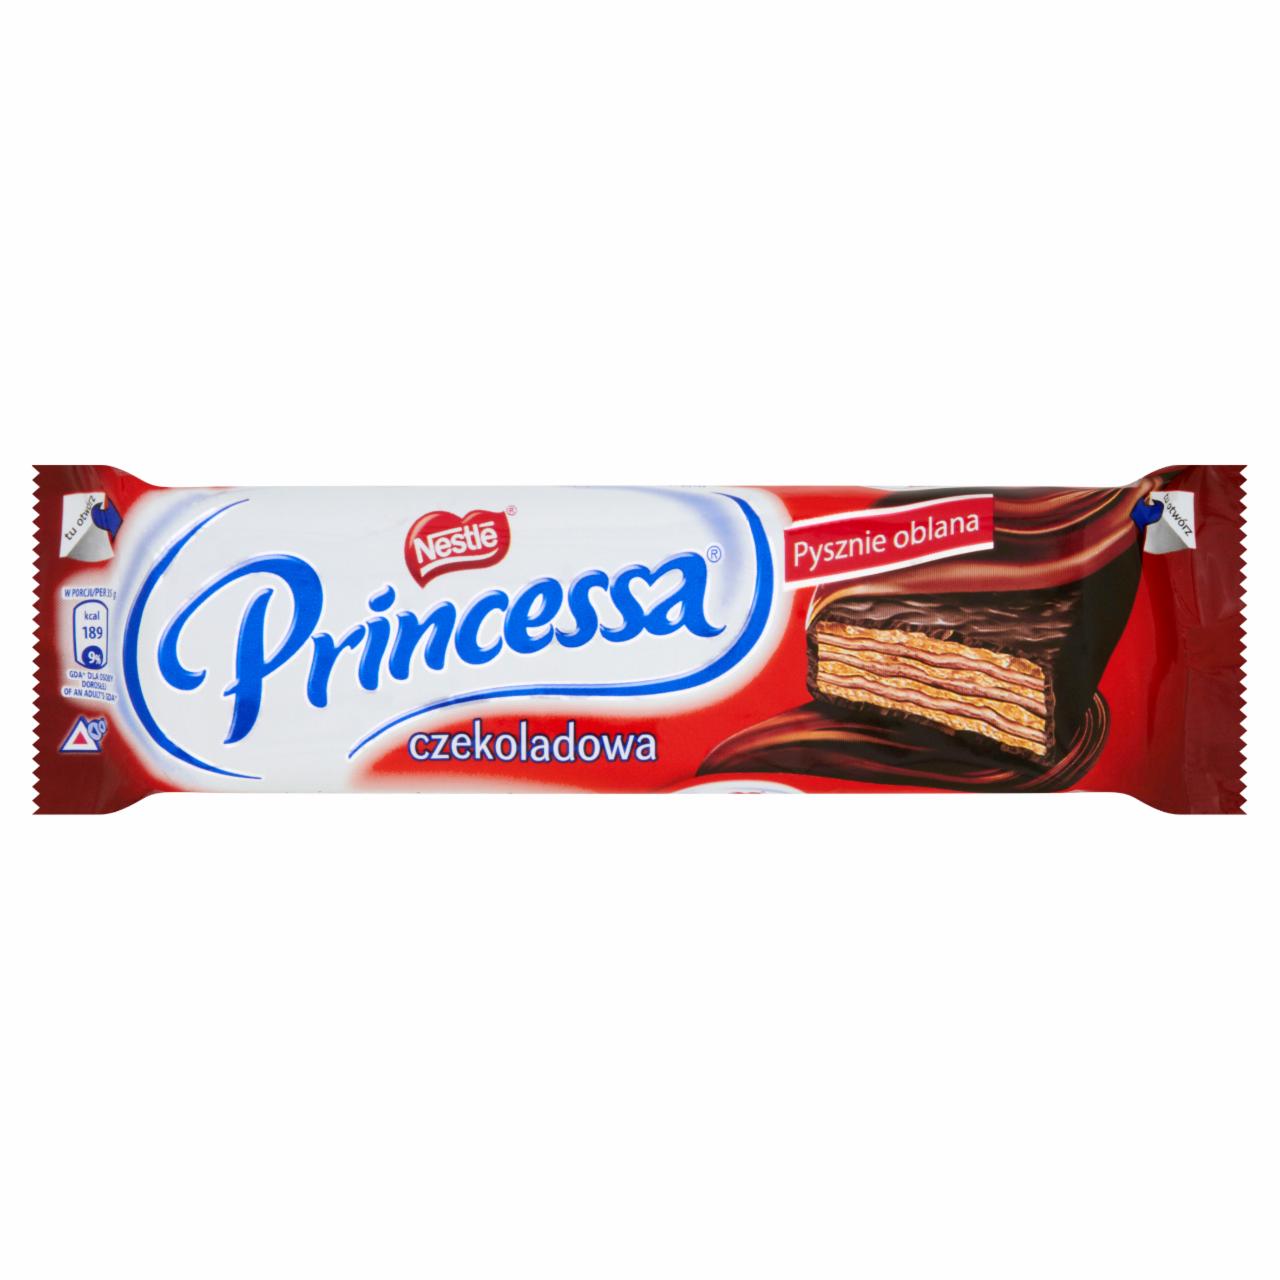 Zdjęcia - Princessa czekoladowa Wafelek przekładany kremem czekoladowym oblany czekoladą deserową 35 g